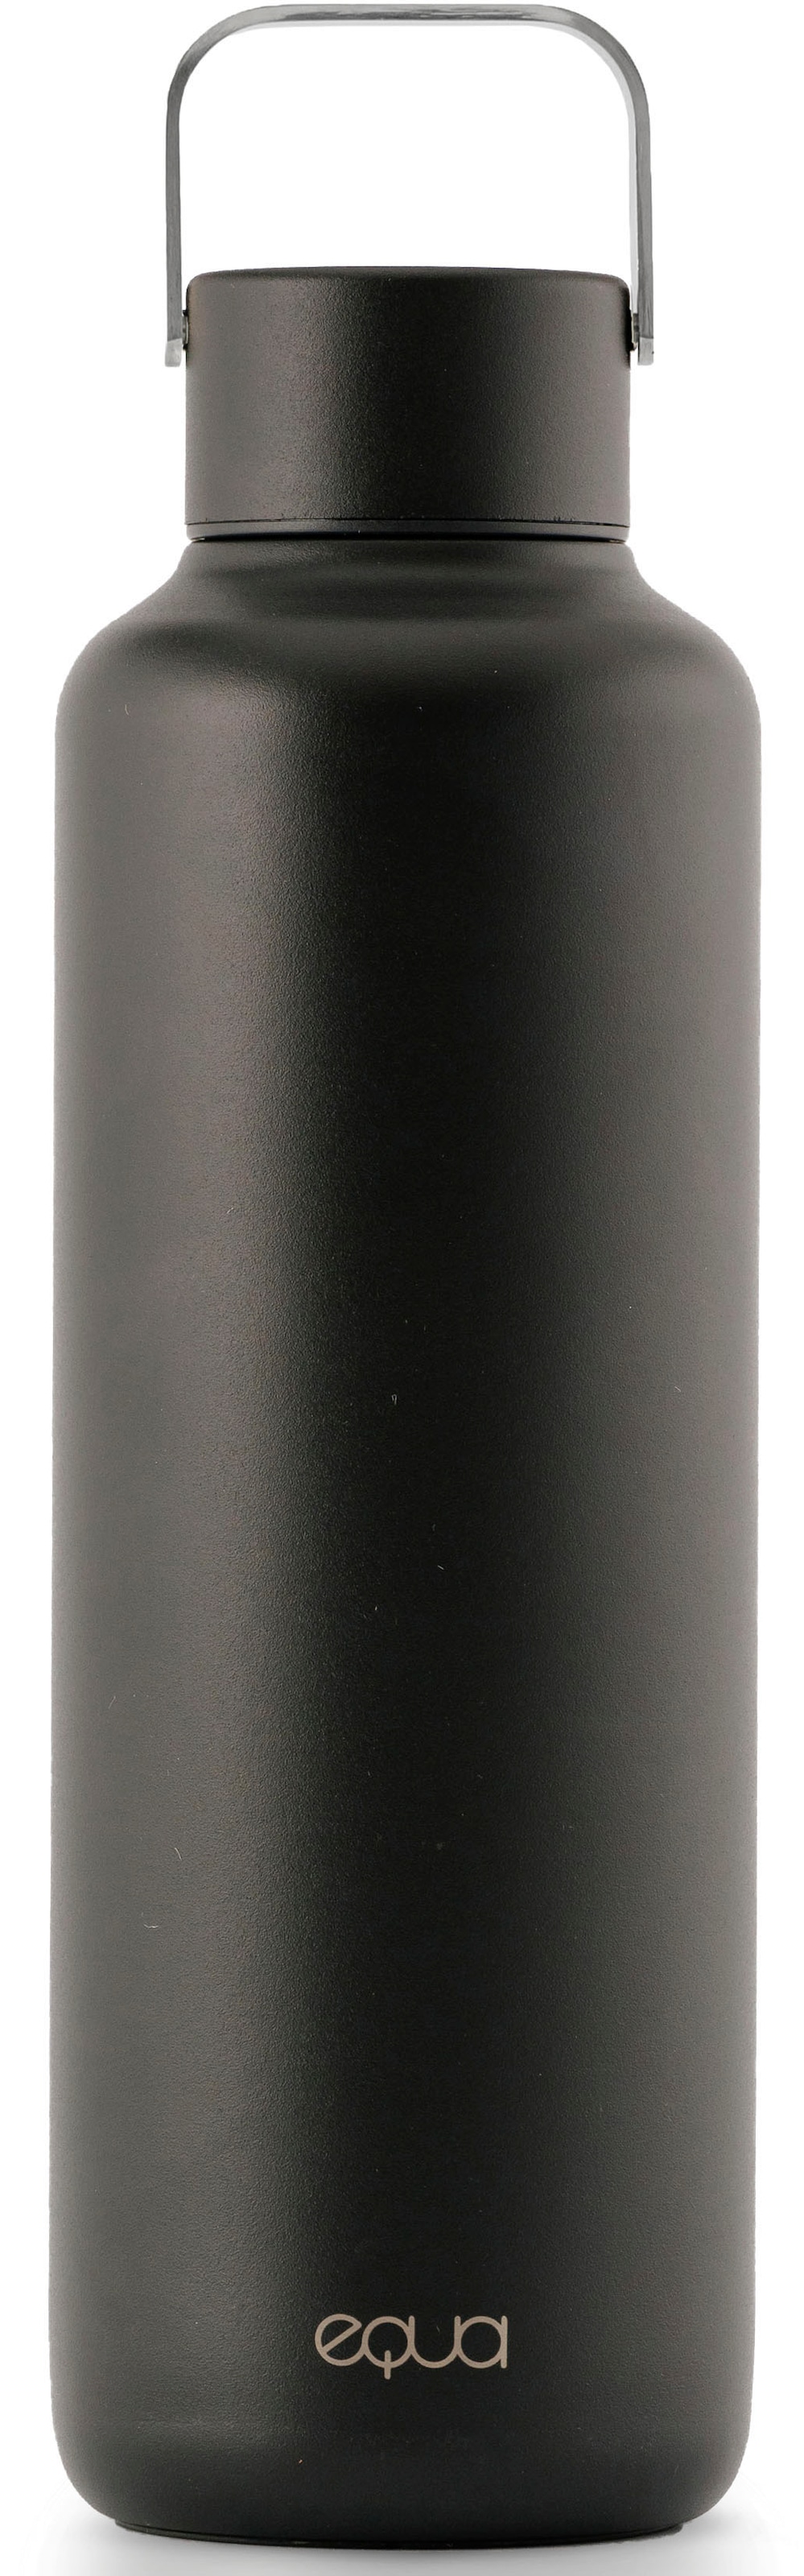 Isolierflasche »Timeless Dark 600 ml«, Edelstahl, doppelwandig